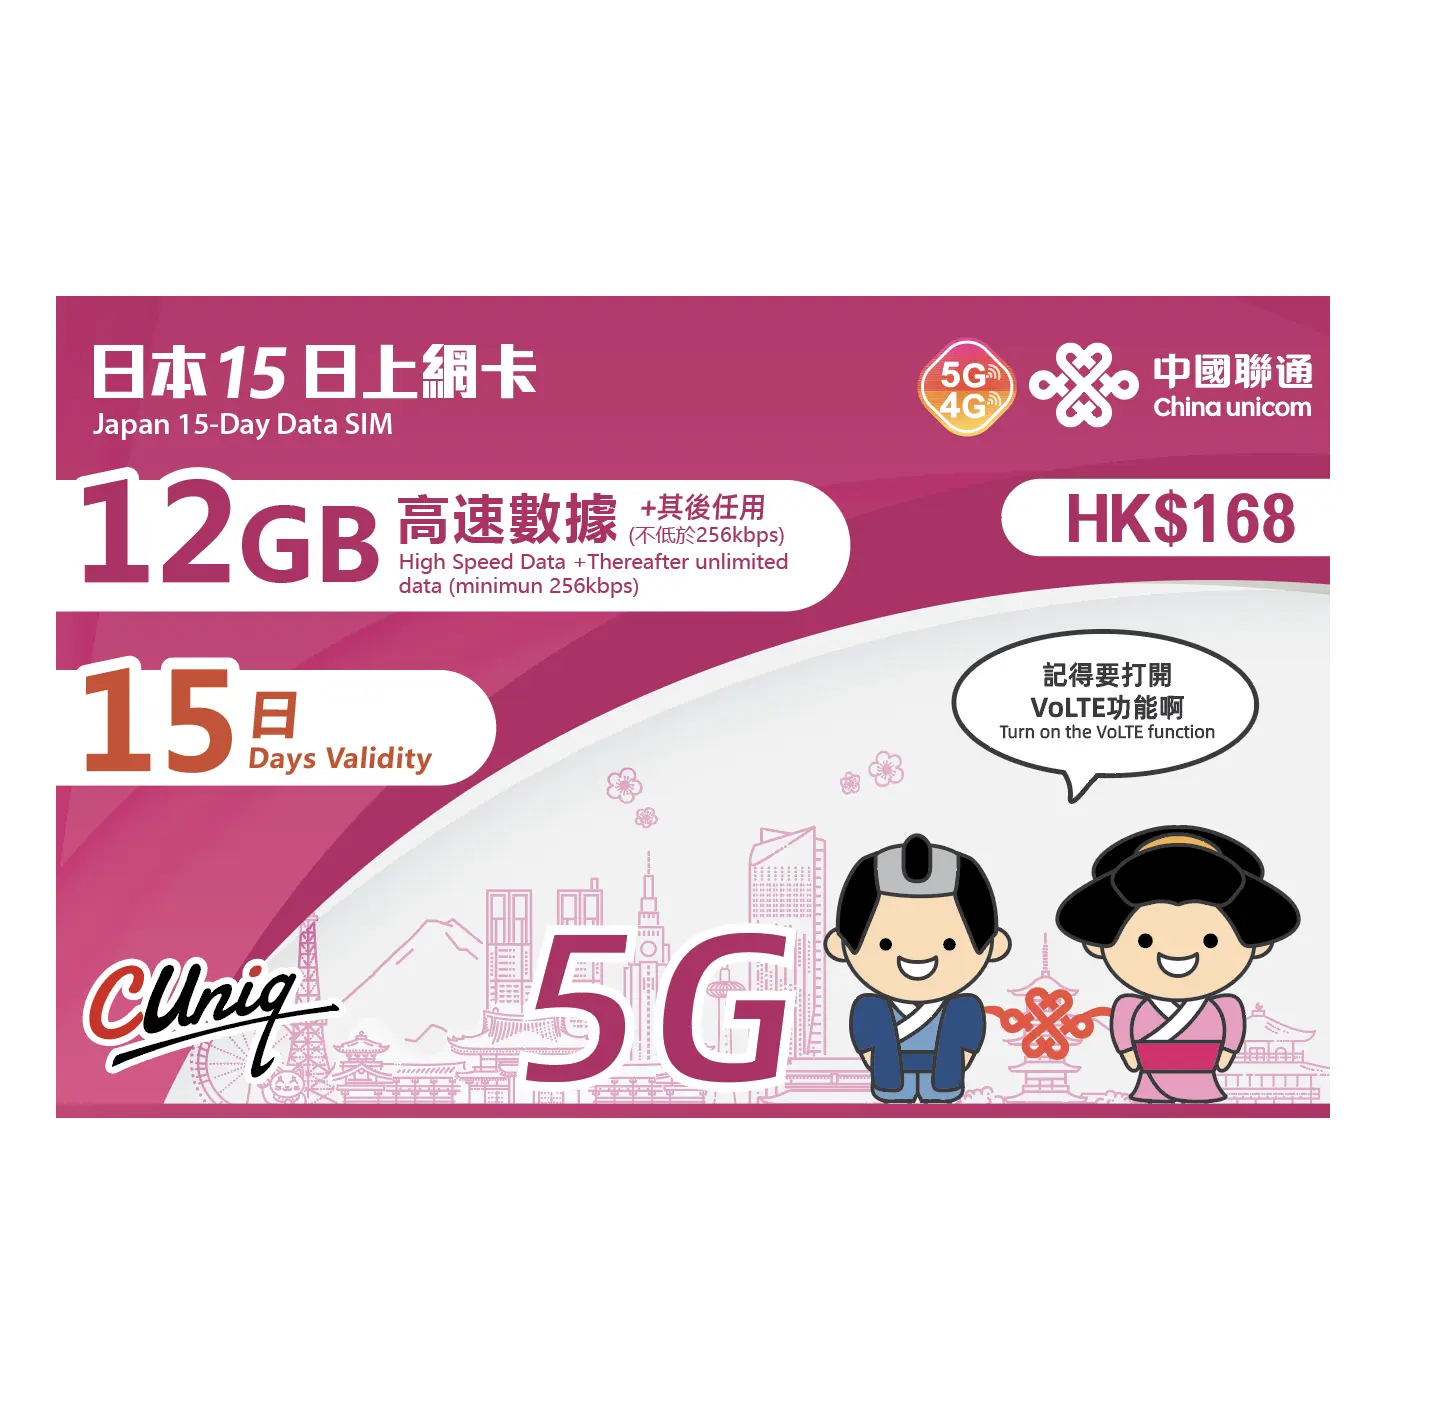 بطاقة SIM لشخصية الهاتف المحمول مدفوعة مسبقًا يابانية للسفر من China Unicom Japan لمدة 15 يومًا بسعة 12 جيجابايت